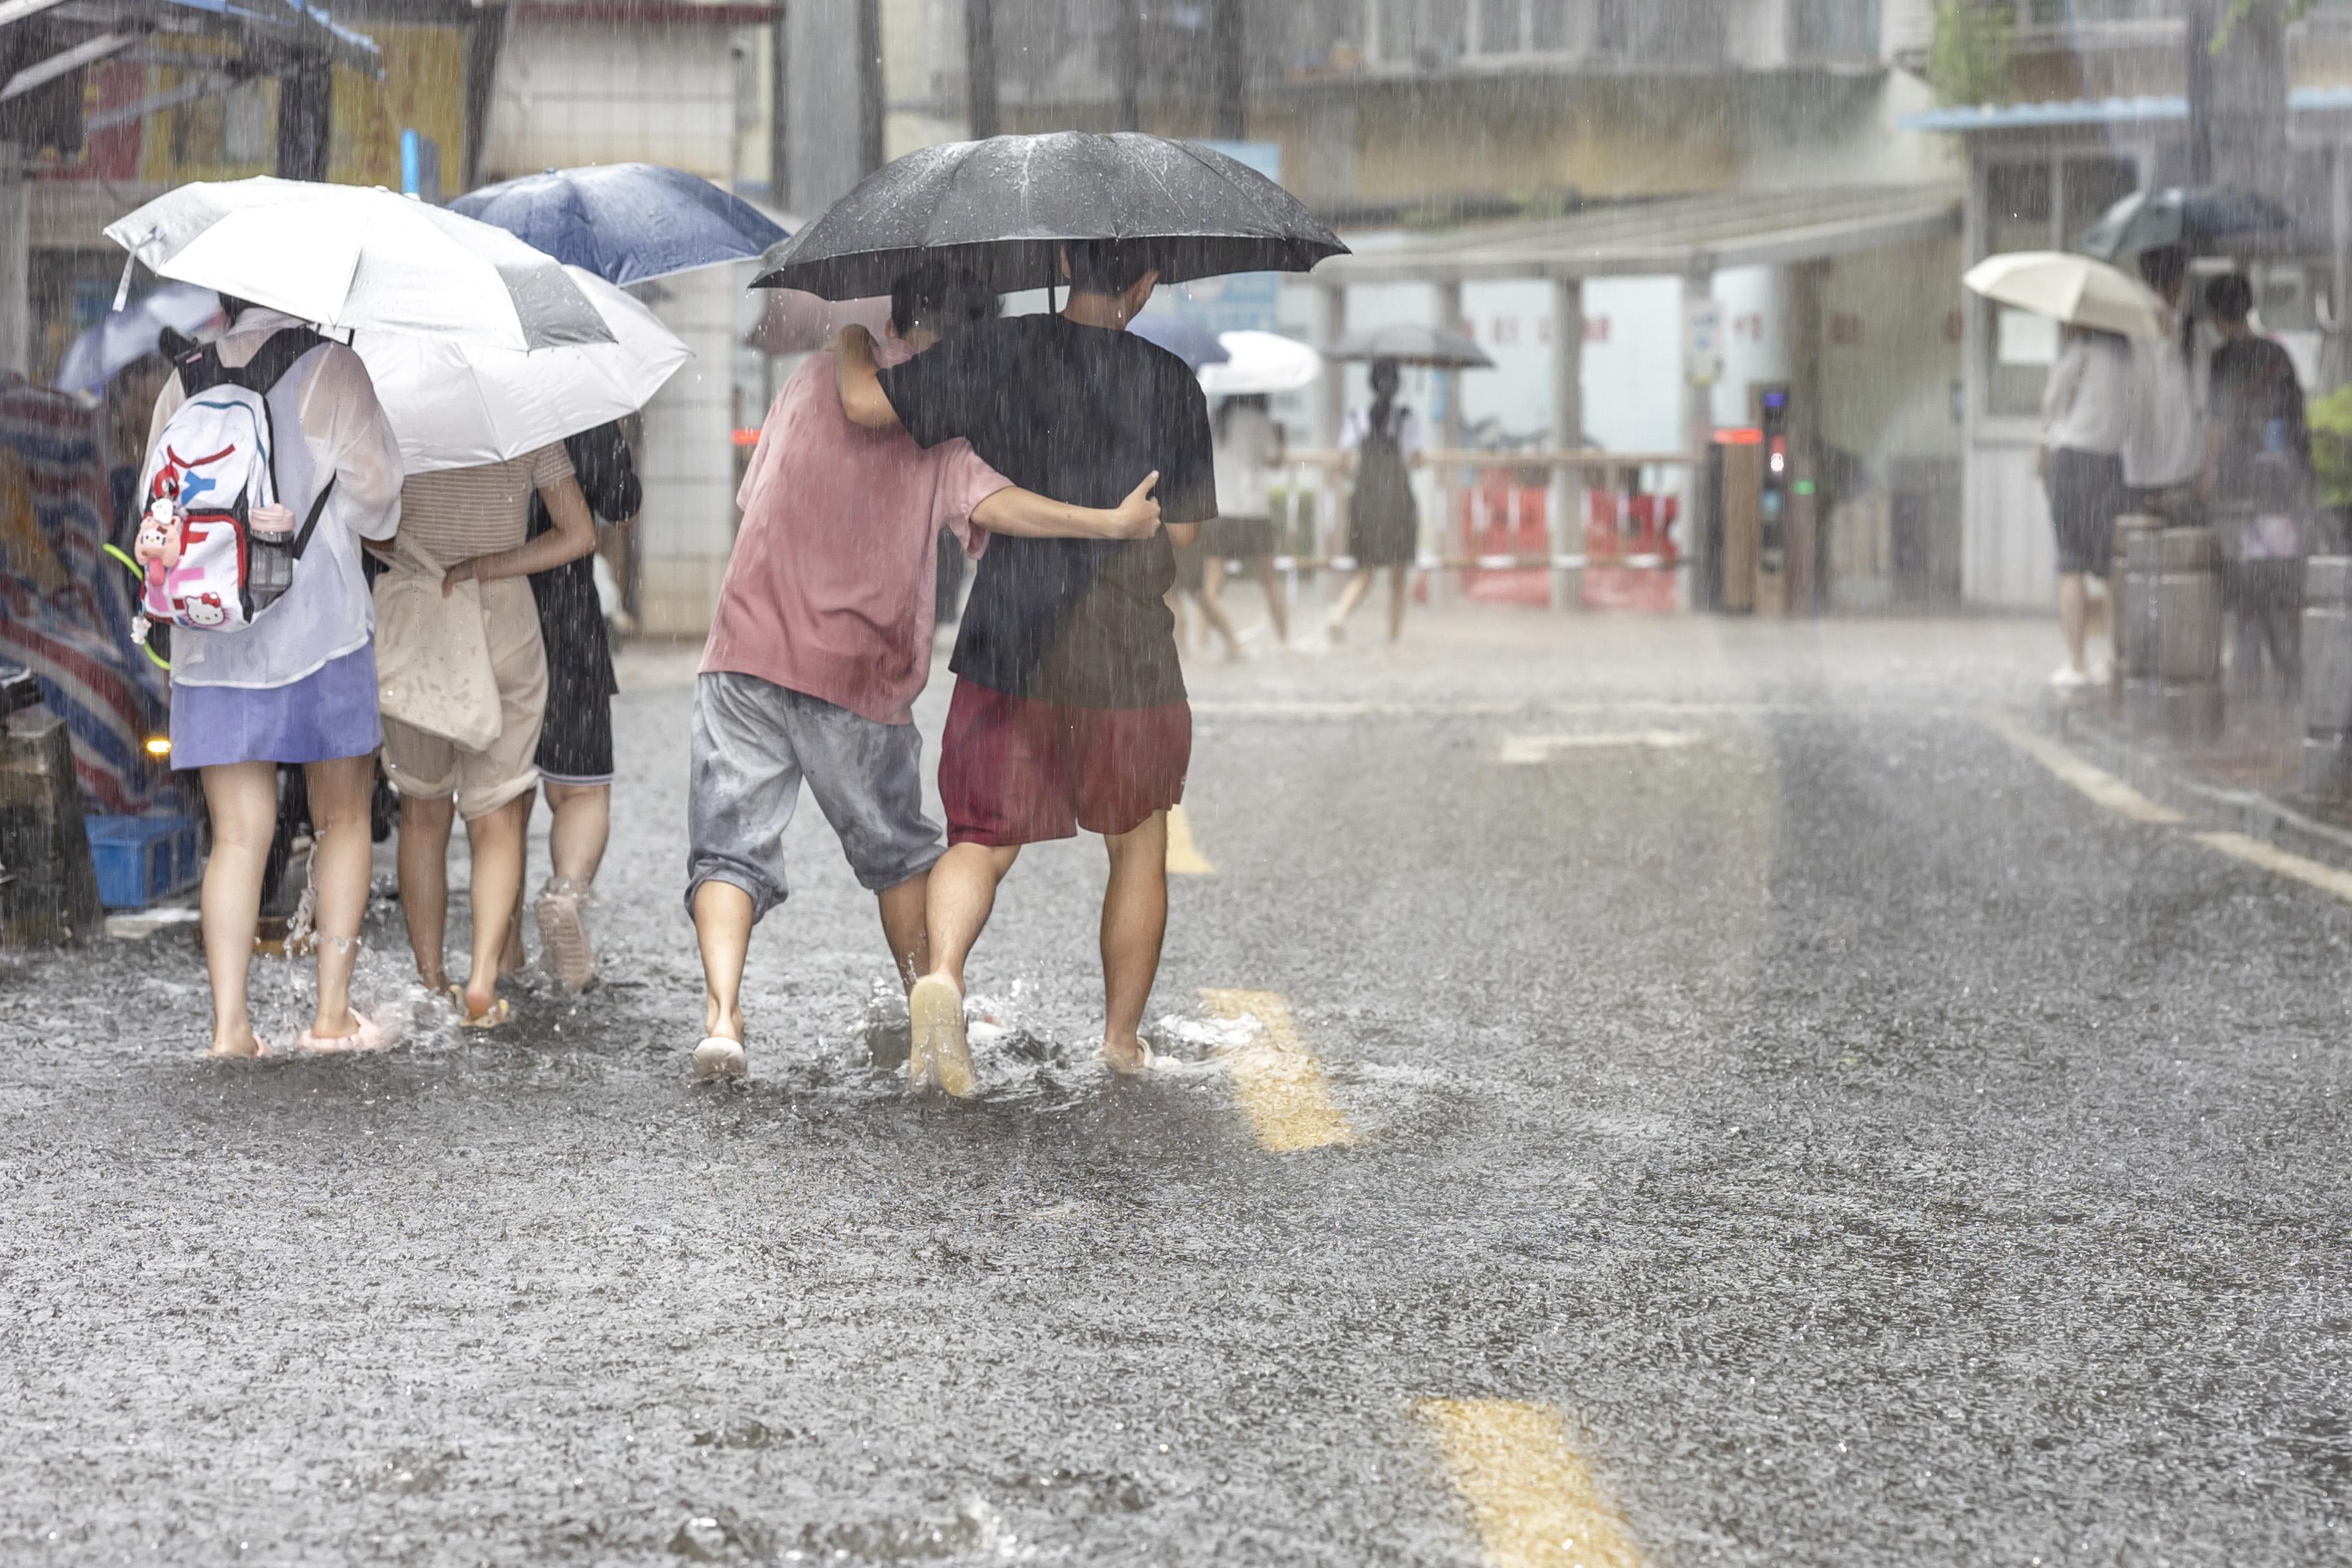 广州出现今年最强降雨过程 总台记者现场观察积水情况-荆楚网-湖北日报网